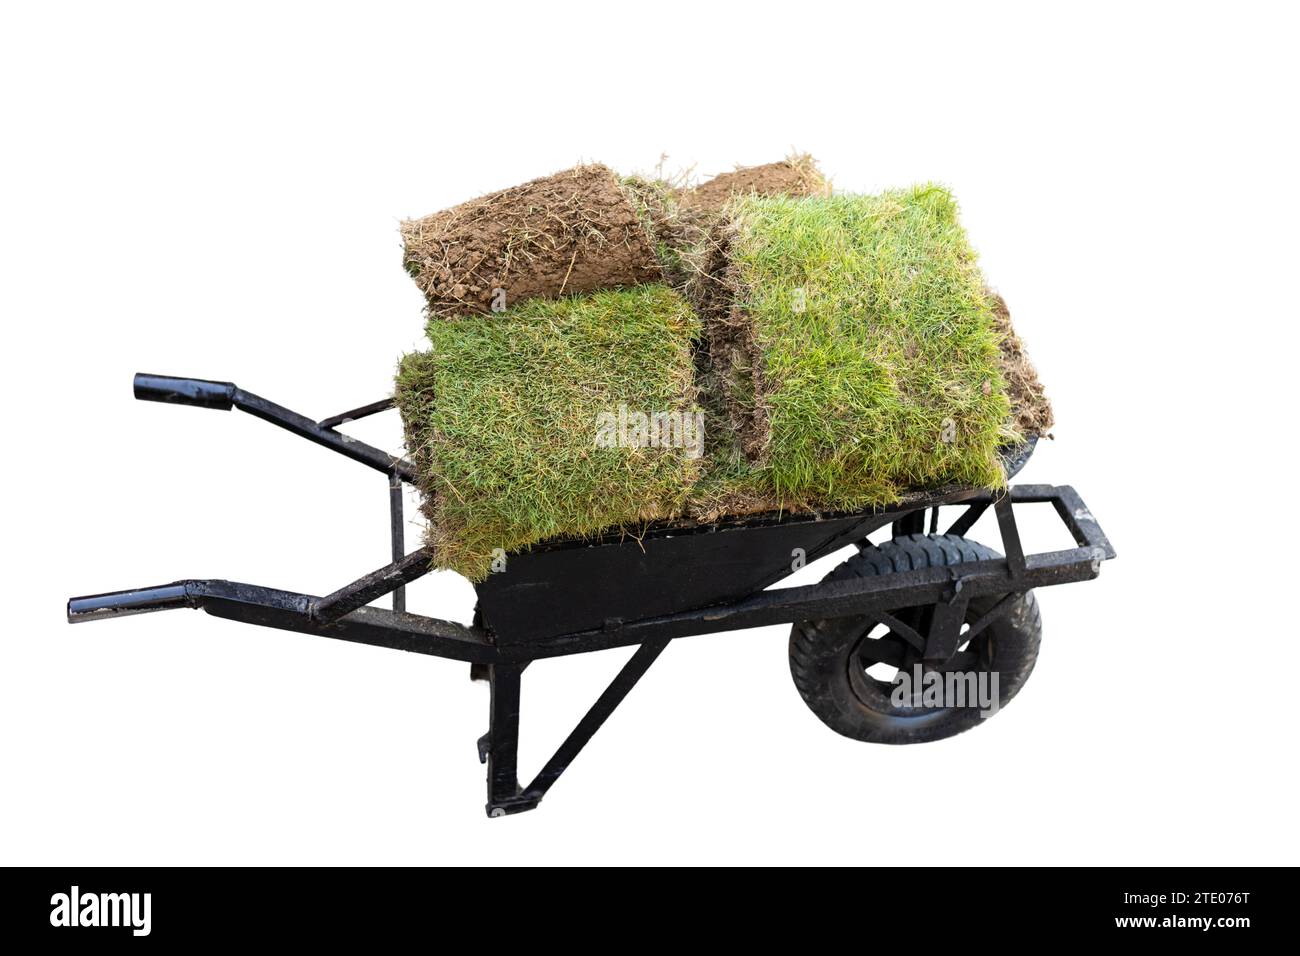 Vecchia carriola con pezzi di erba fresca isolati su sfondo bianco Foto Stock